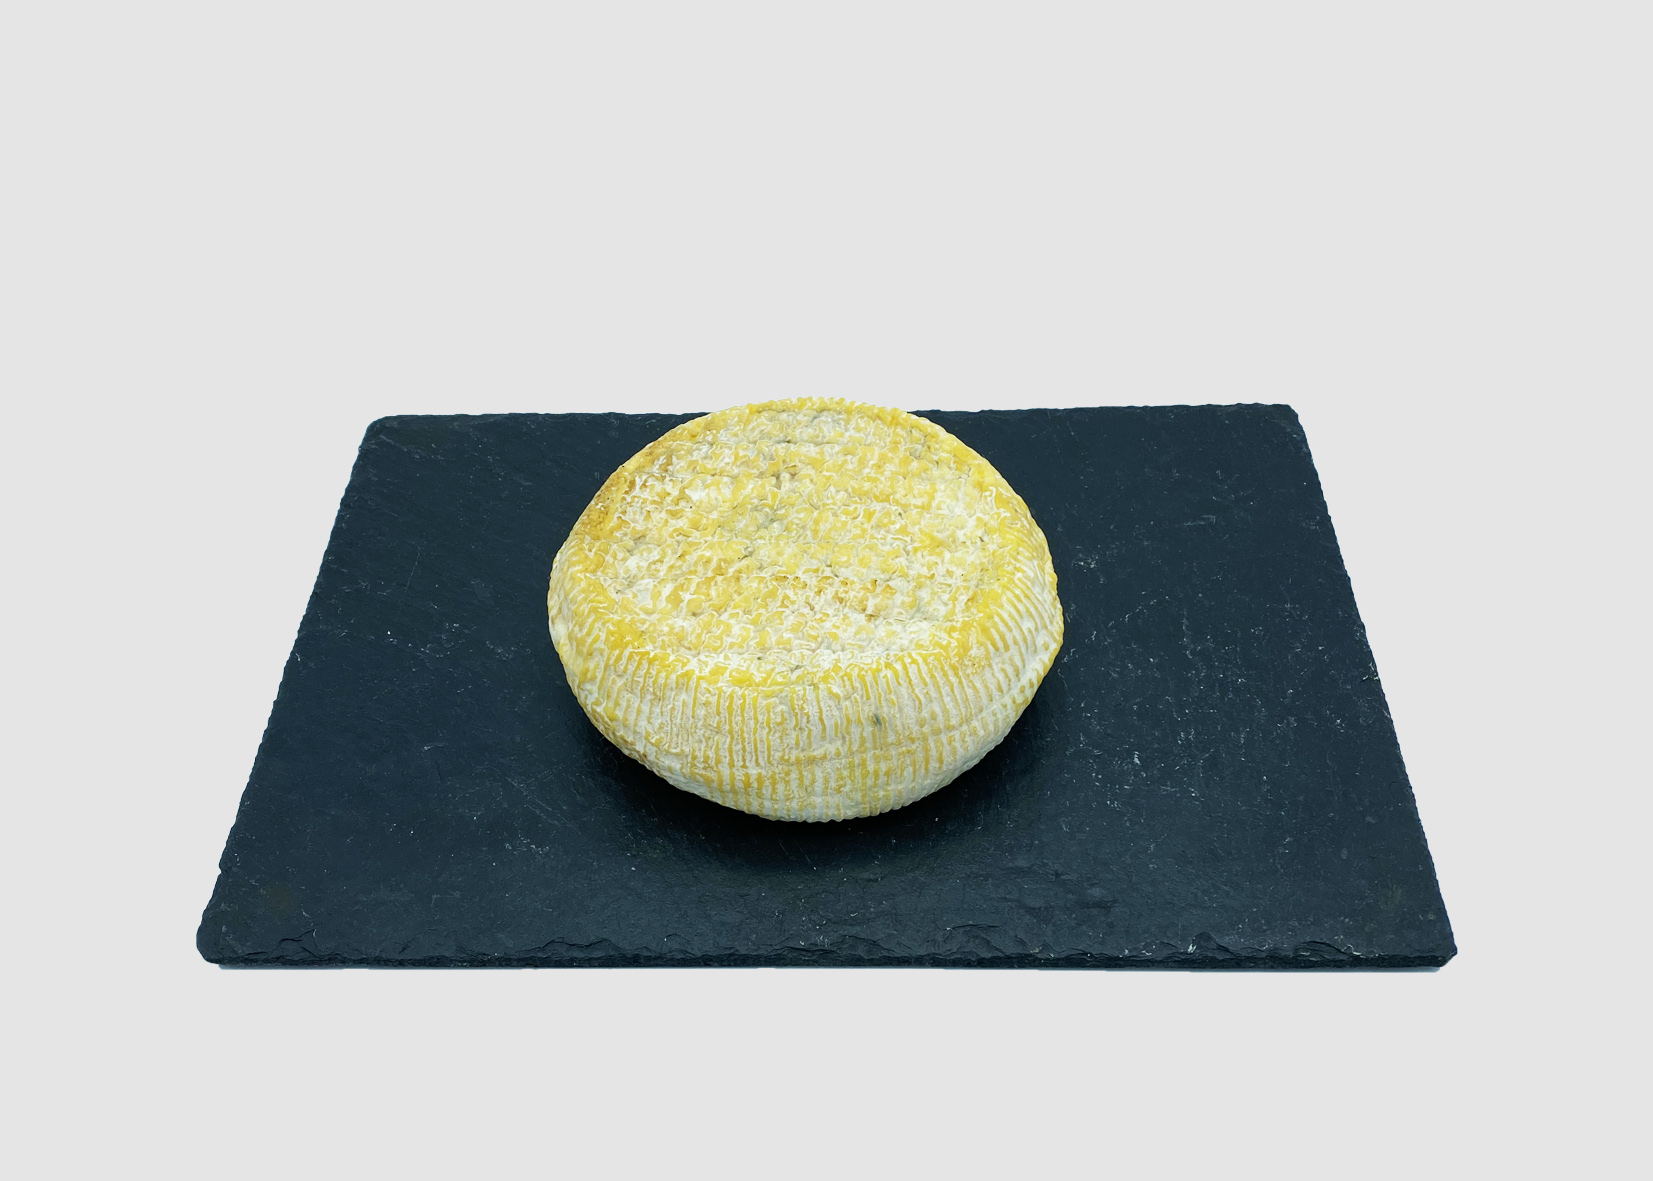 fromage-de-vache-maison-dominique-bouchait-meilleur-ouvrier-de-france